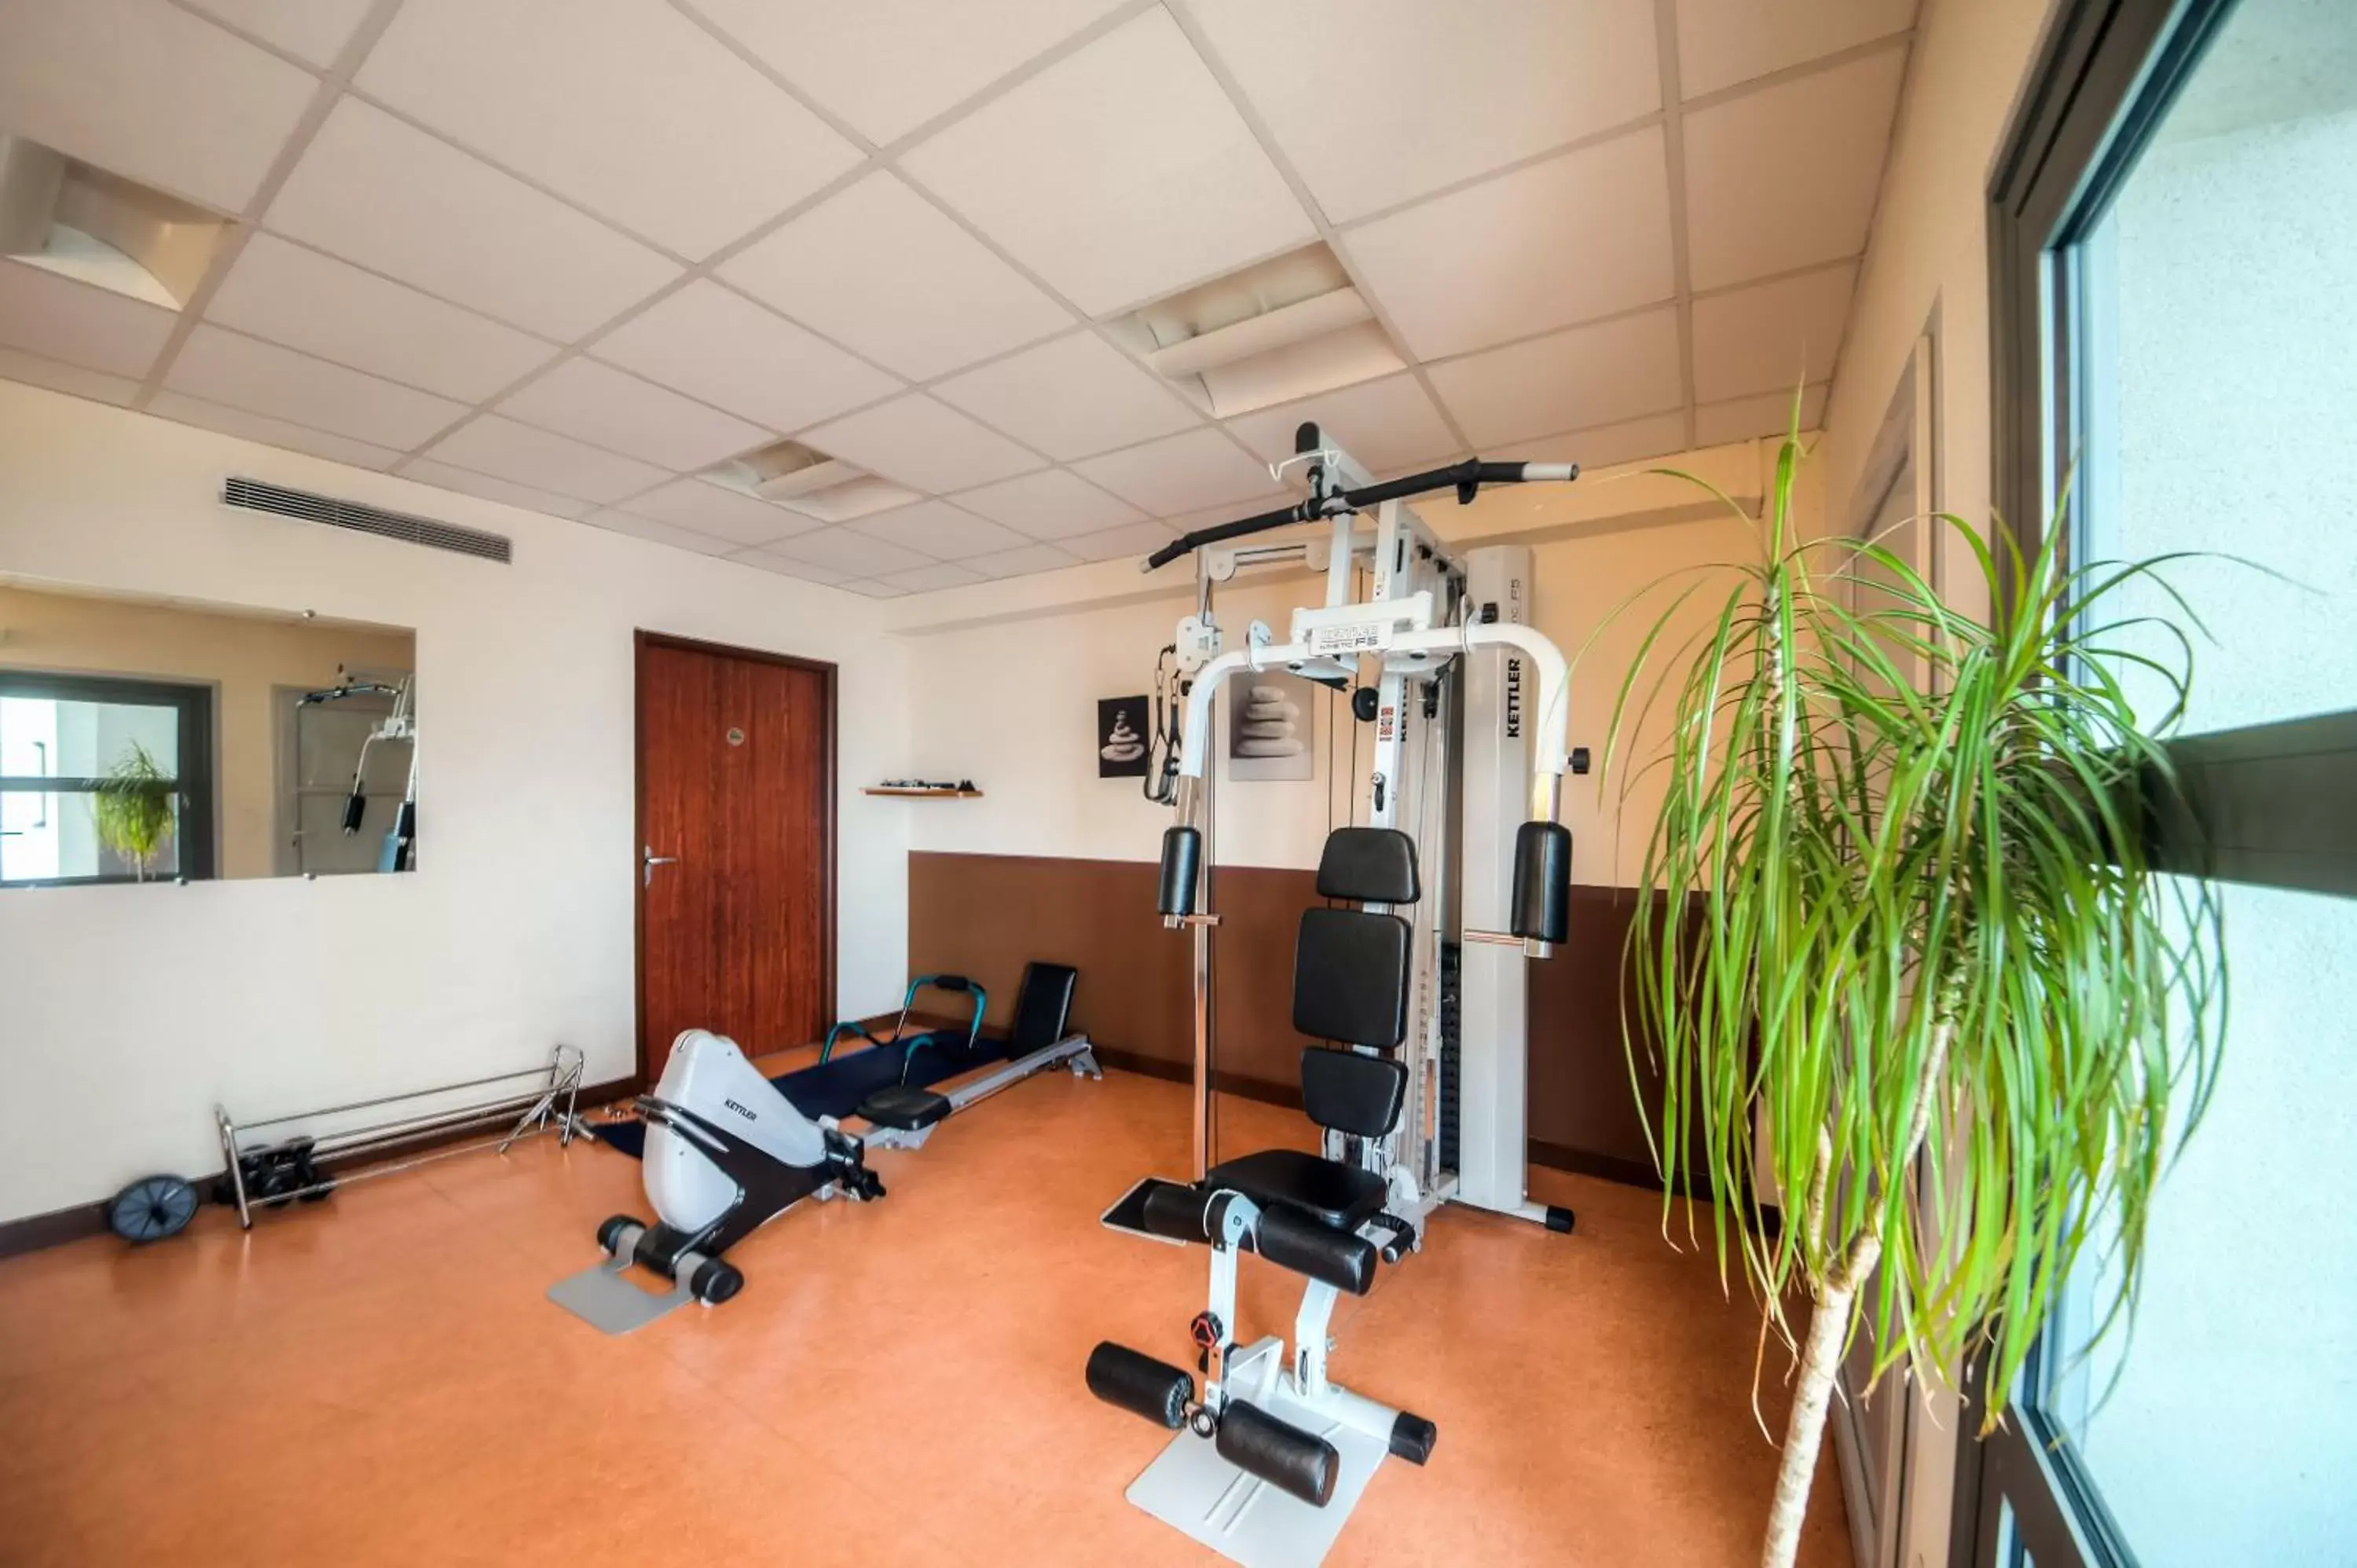 Fitness centre/facilities, Fitness Center/Facilities in Zenitude Hôtel-Résidences Les Portes de l'Océan